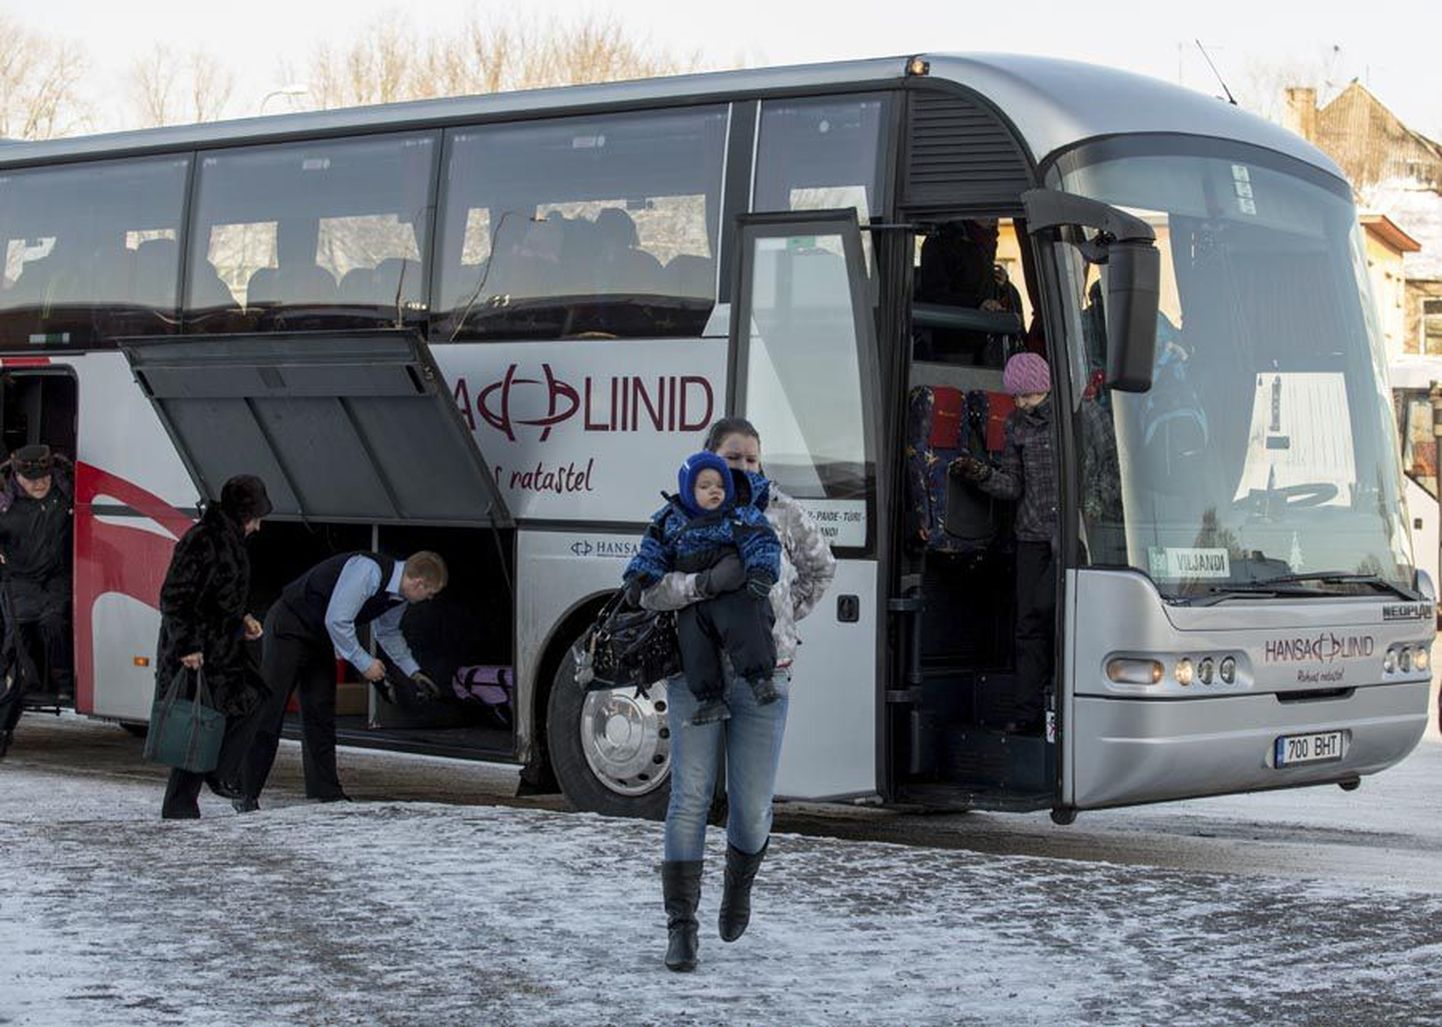 Et konkurents rongide ja busside vahel on äge, langetas Hansa Liinid Viljandist Tallinna ja tagasi sõitvates bussides piletihindu. Mõnel puhul võib vahe varasema hinnaga olla paar eurot.